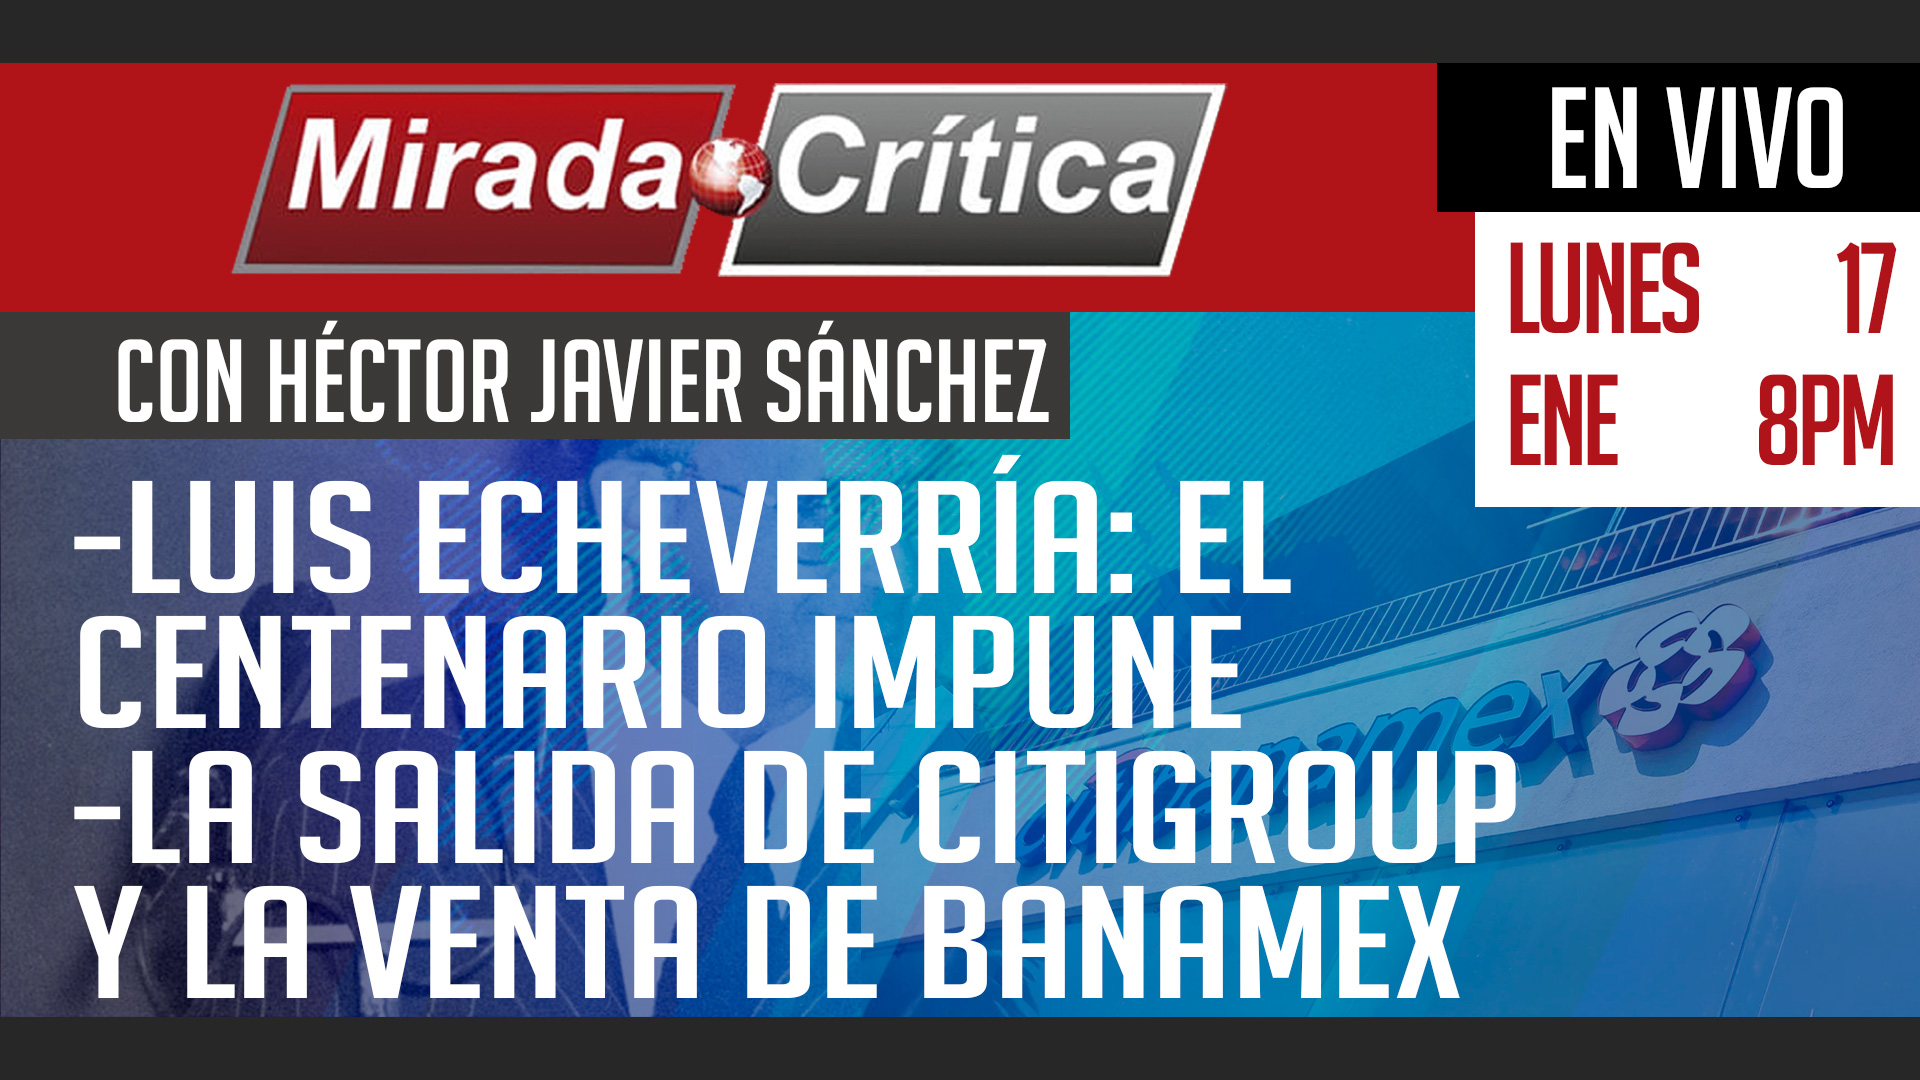 Luis Echeverría: el centenario impune / La salida de Citigroup y venta de Banamex - Mirada Crítica